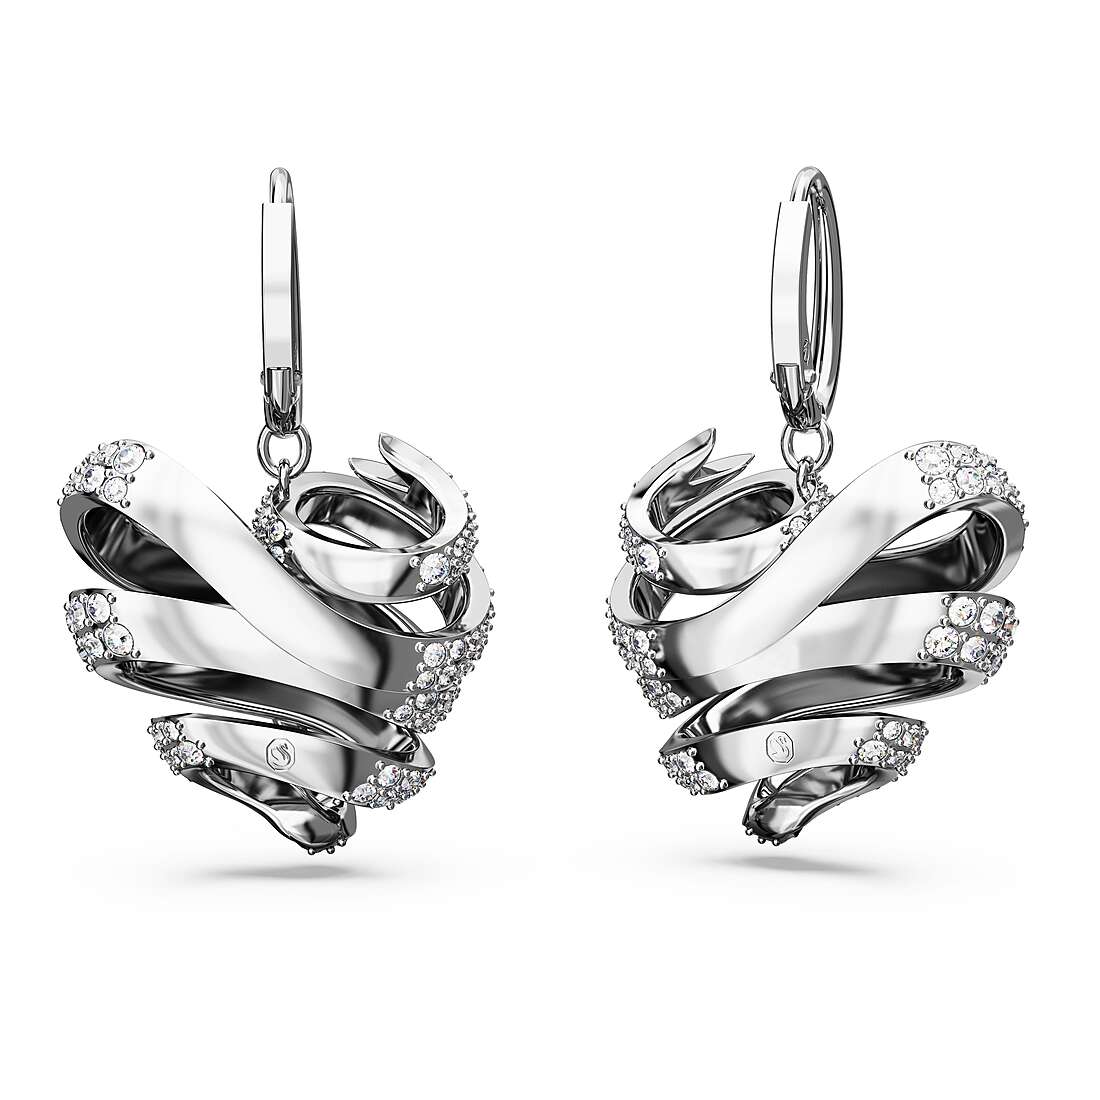 ear-rings woman jewellery Swarovski 5652029